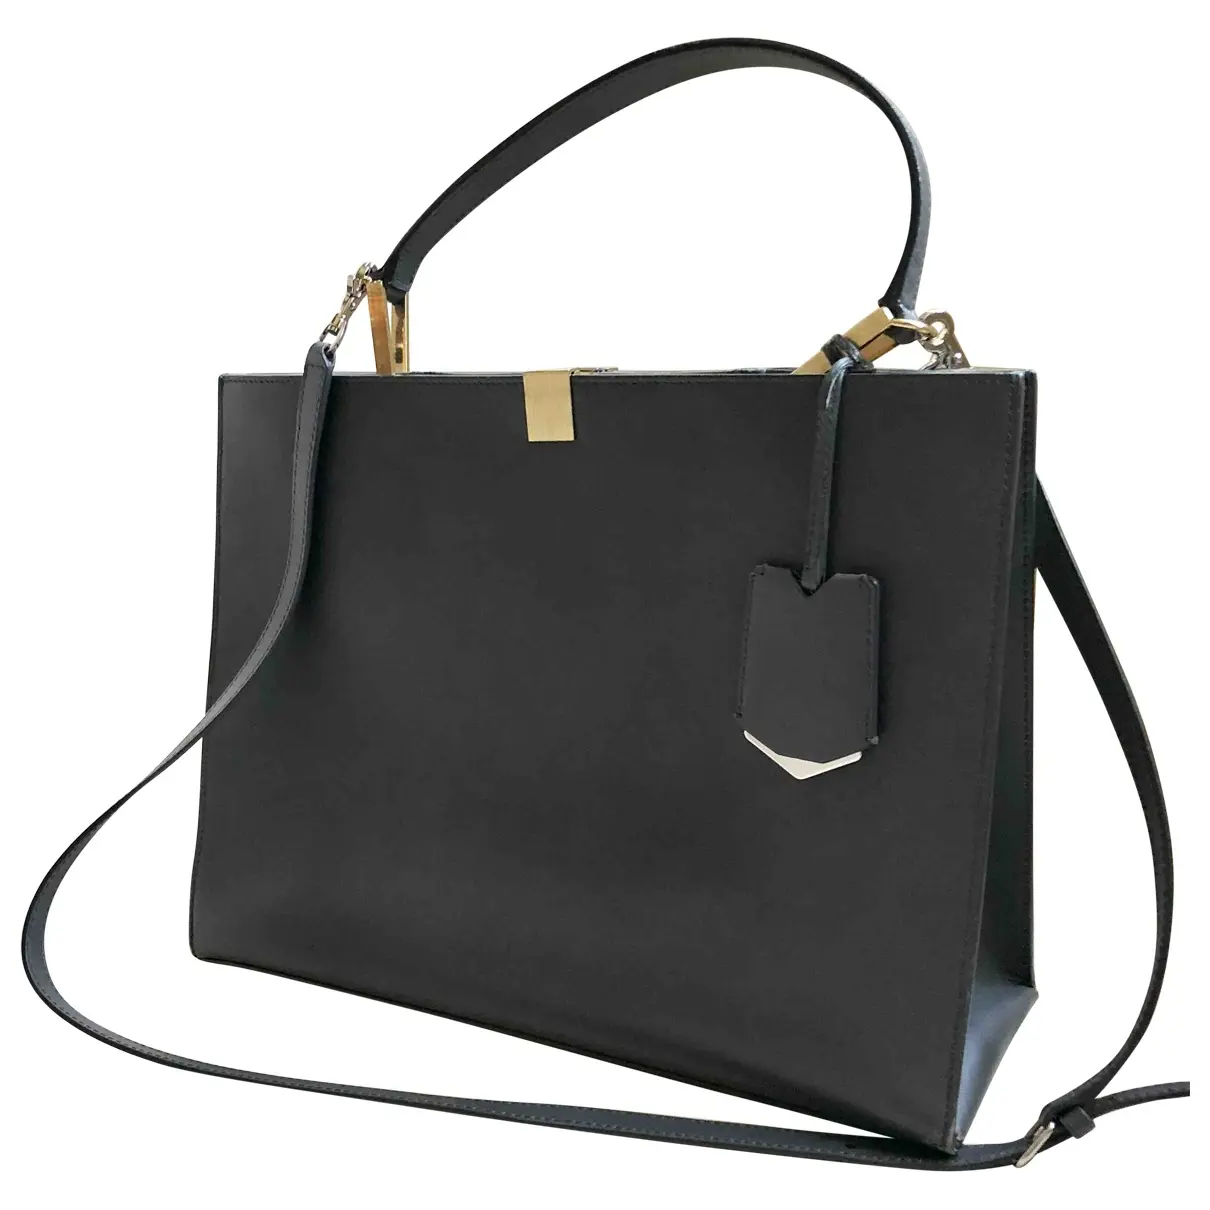 Le Dix leather handbag Balenciaga